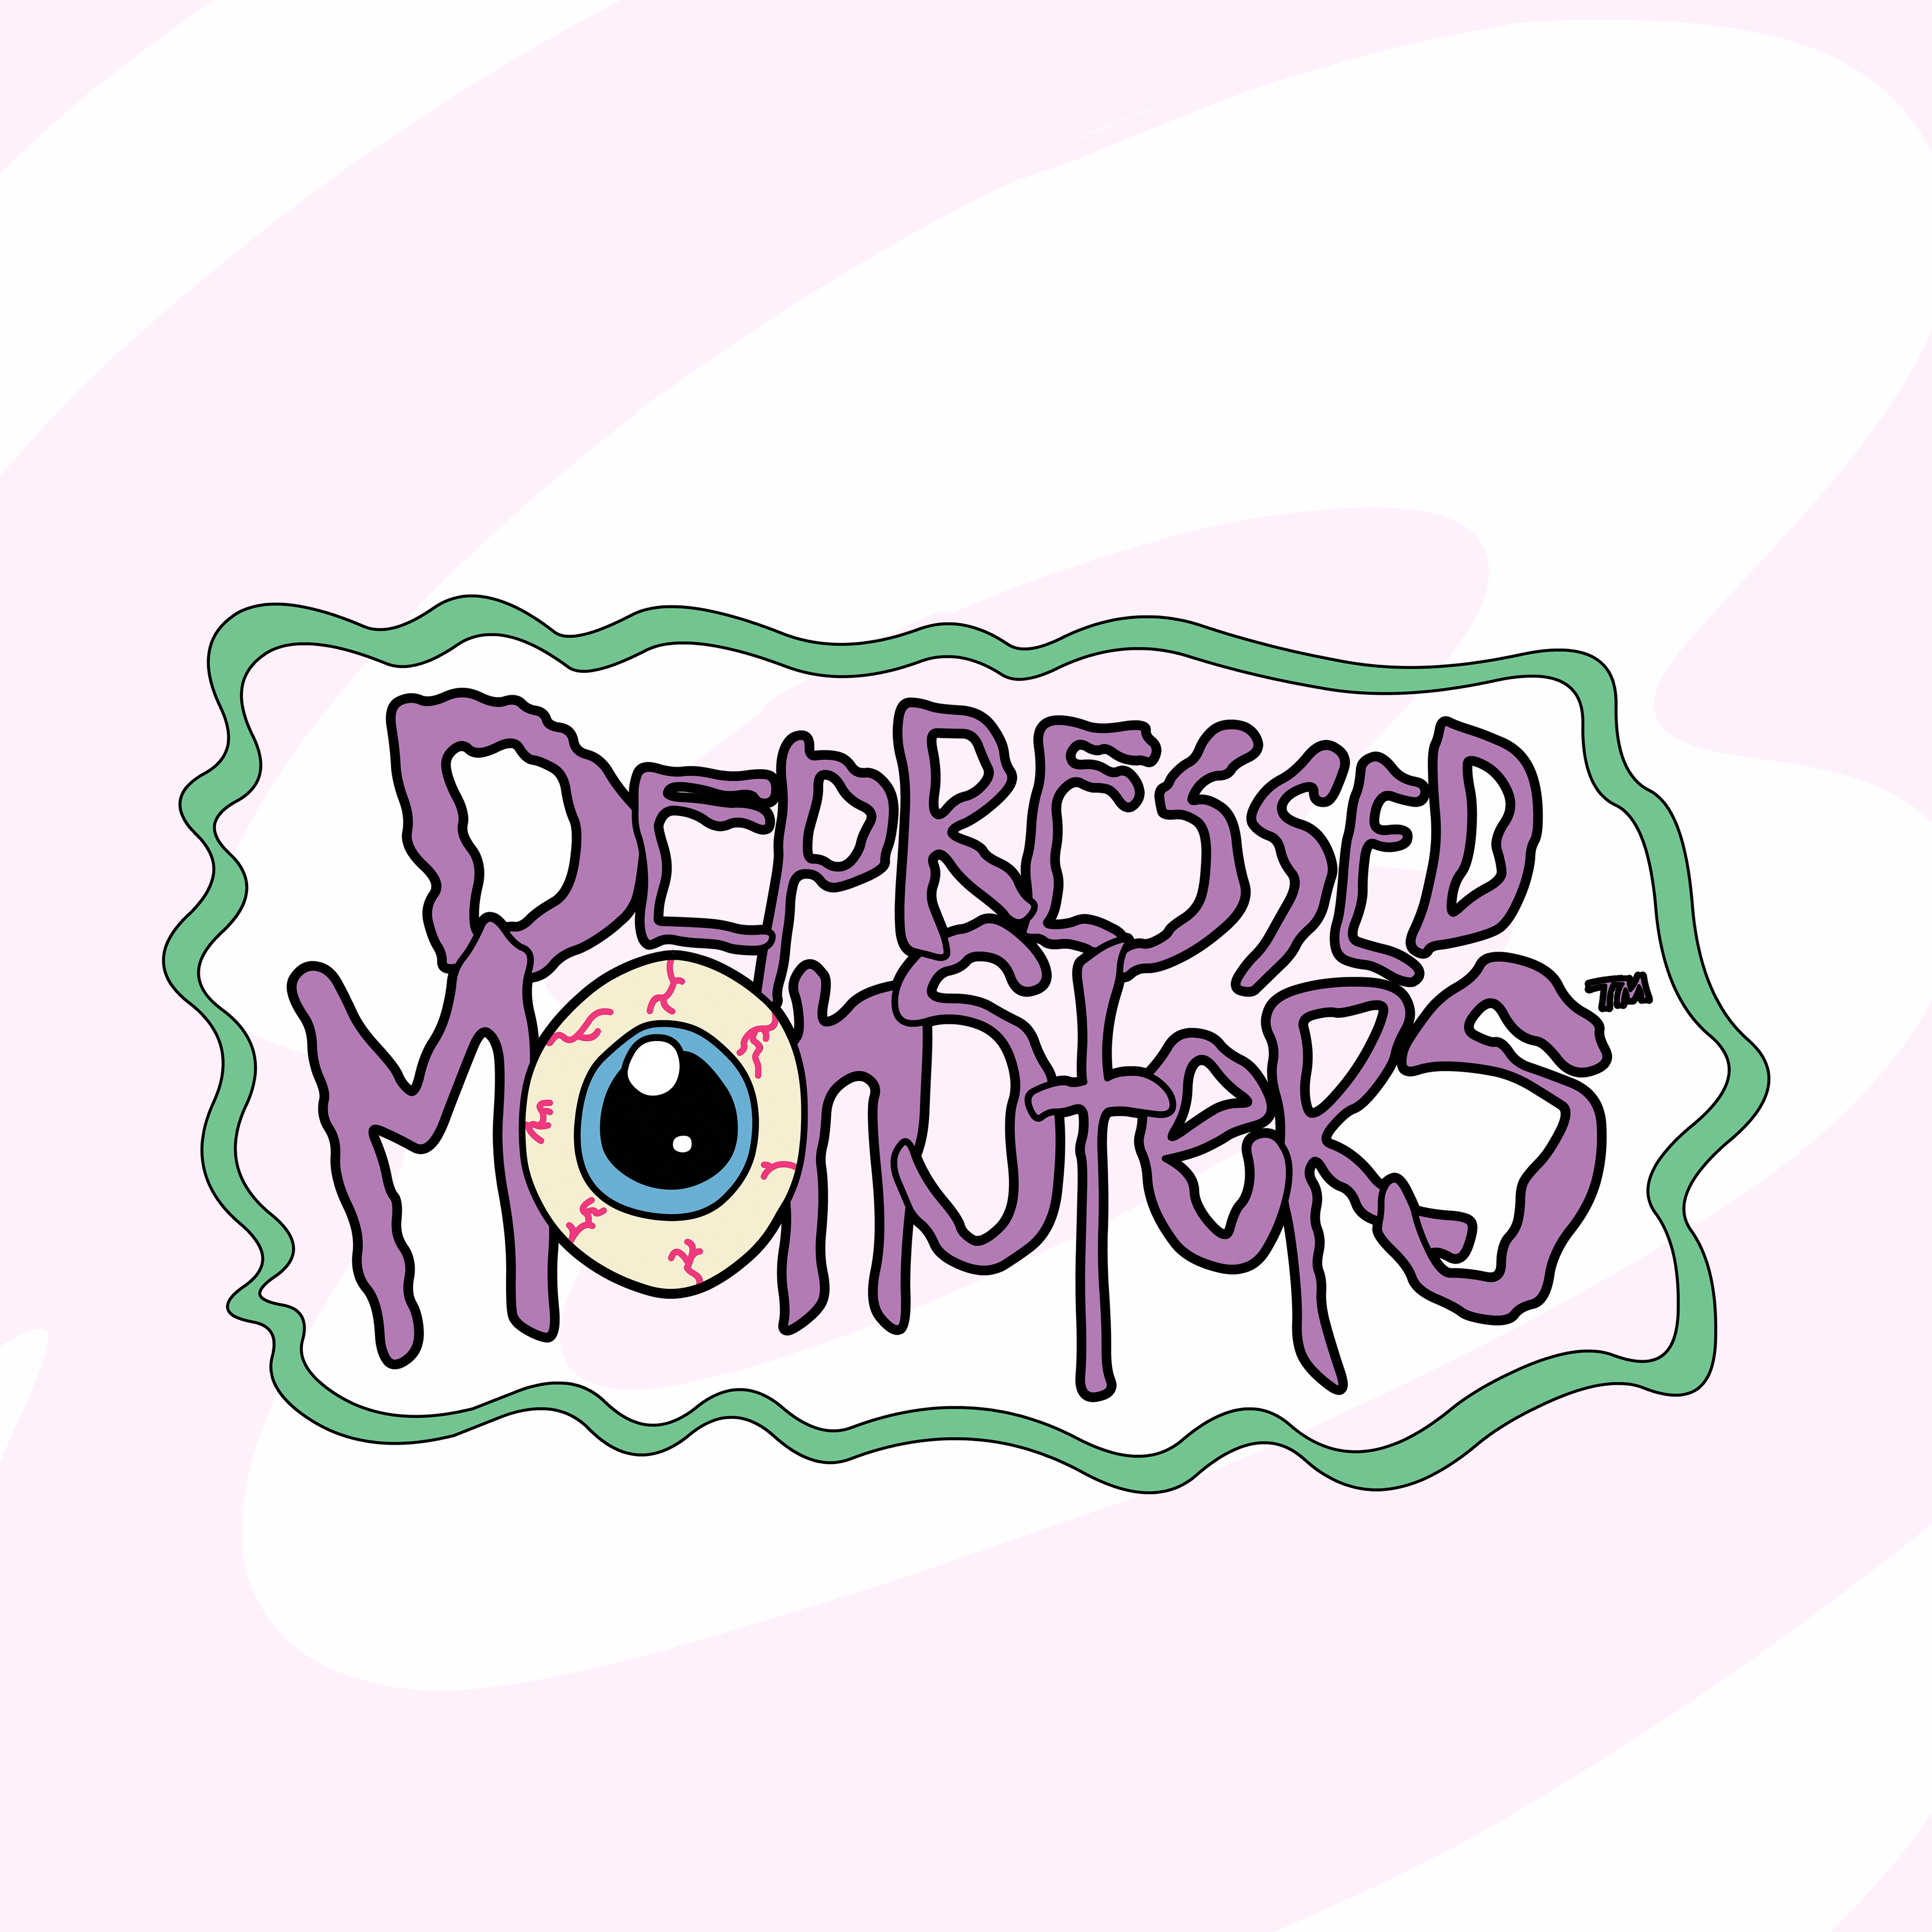 Depressed Monsters